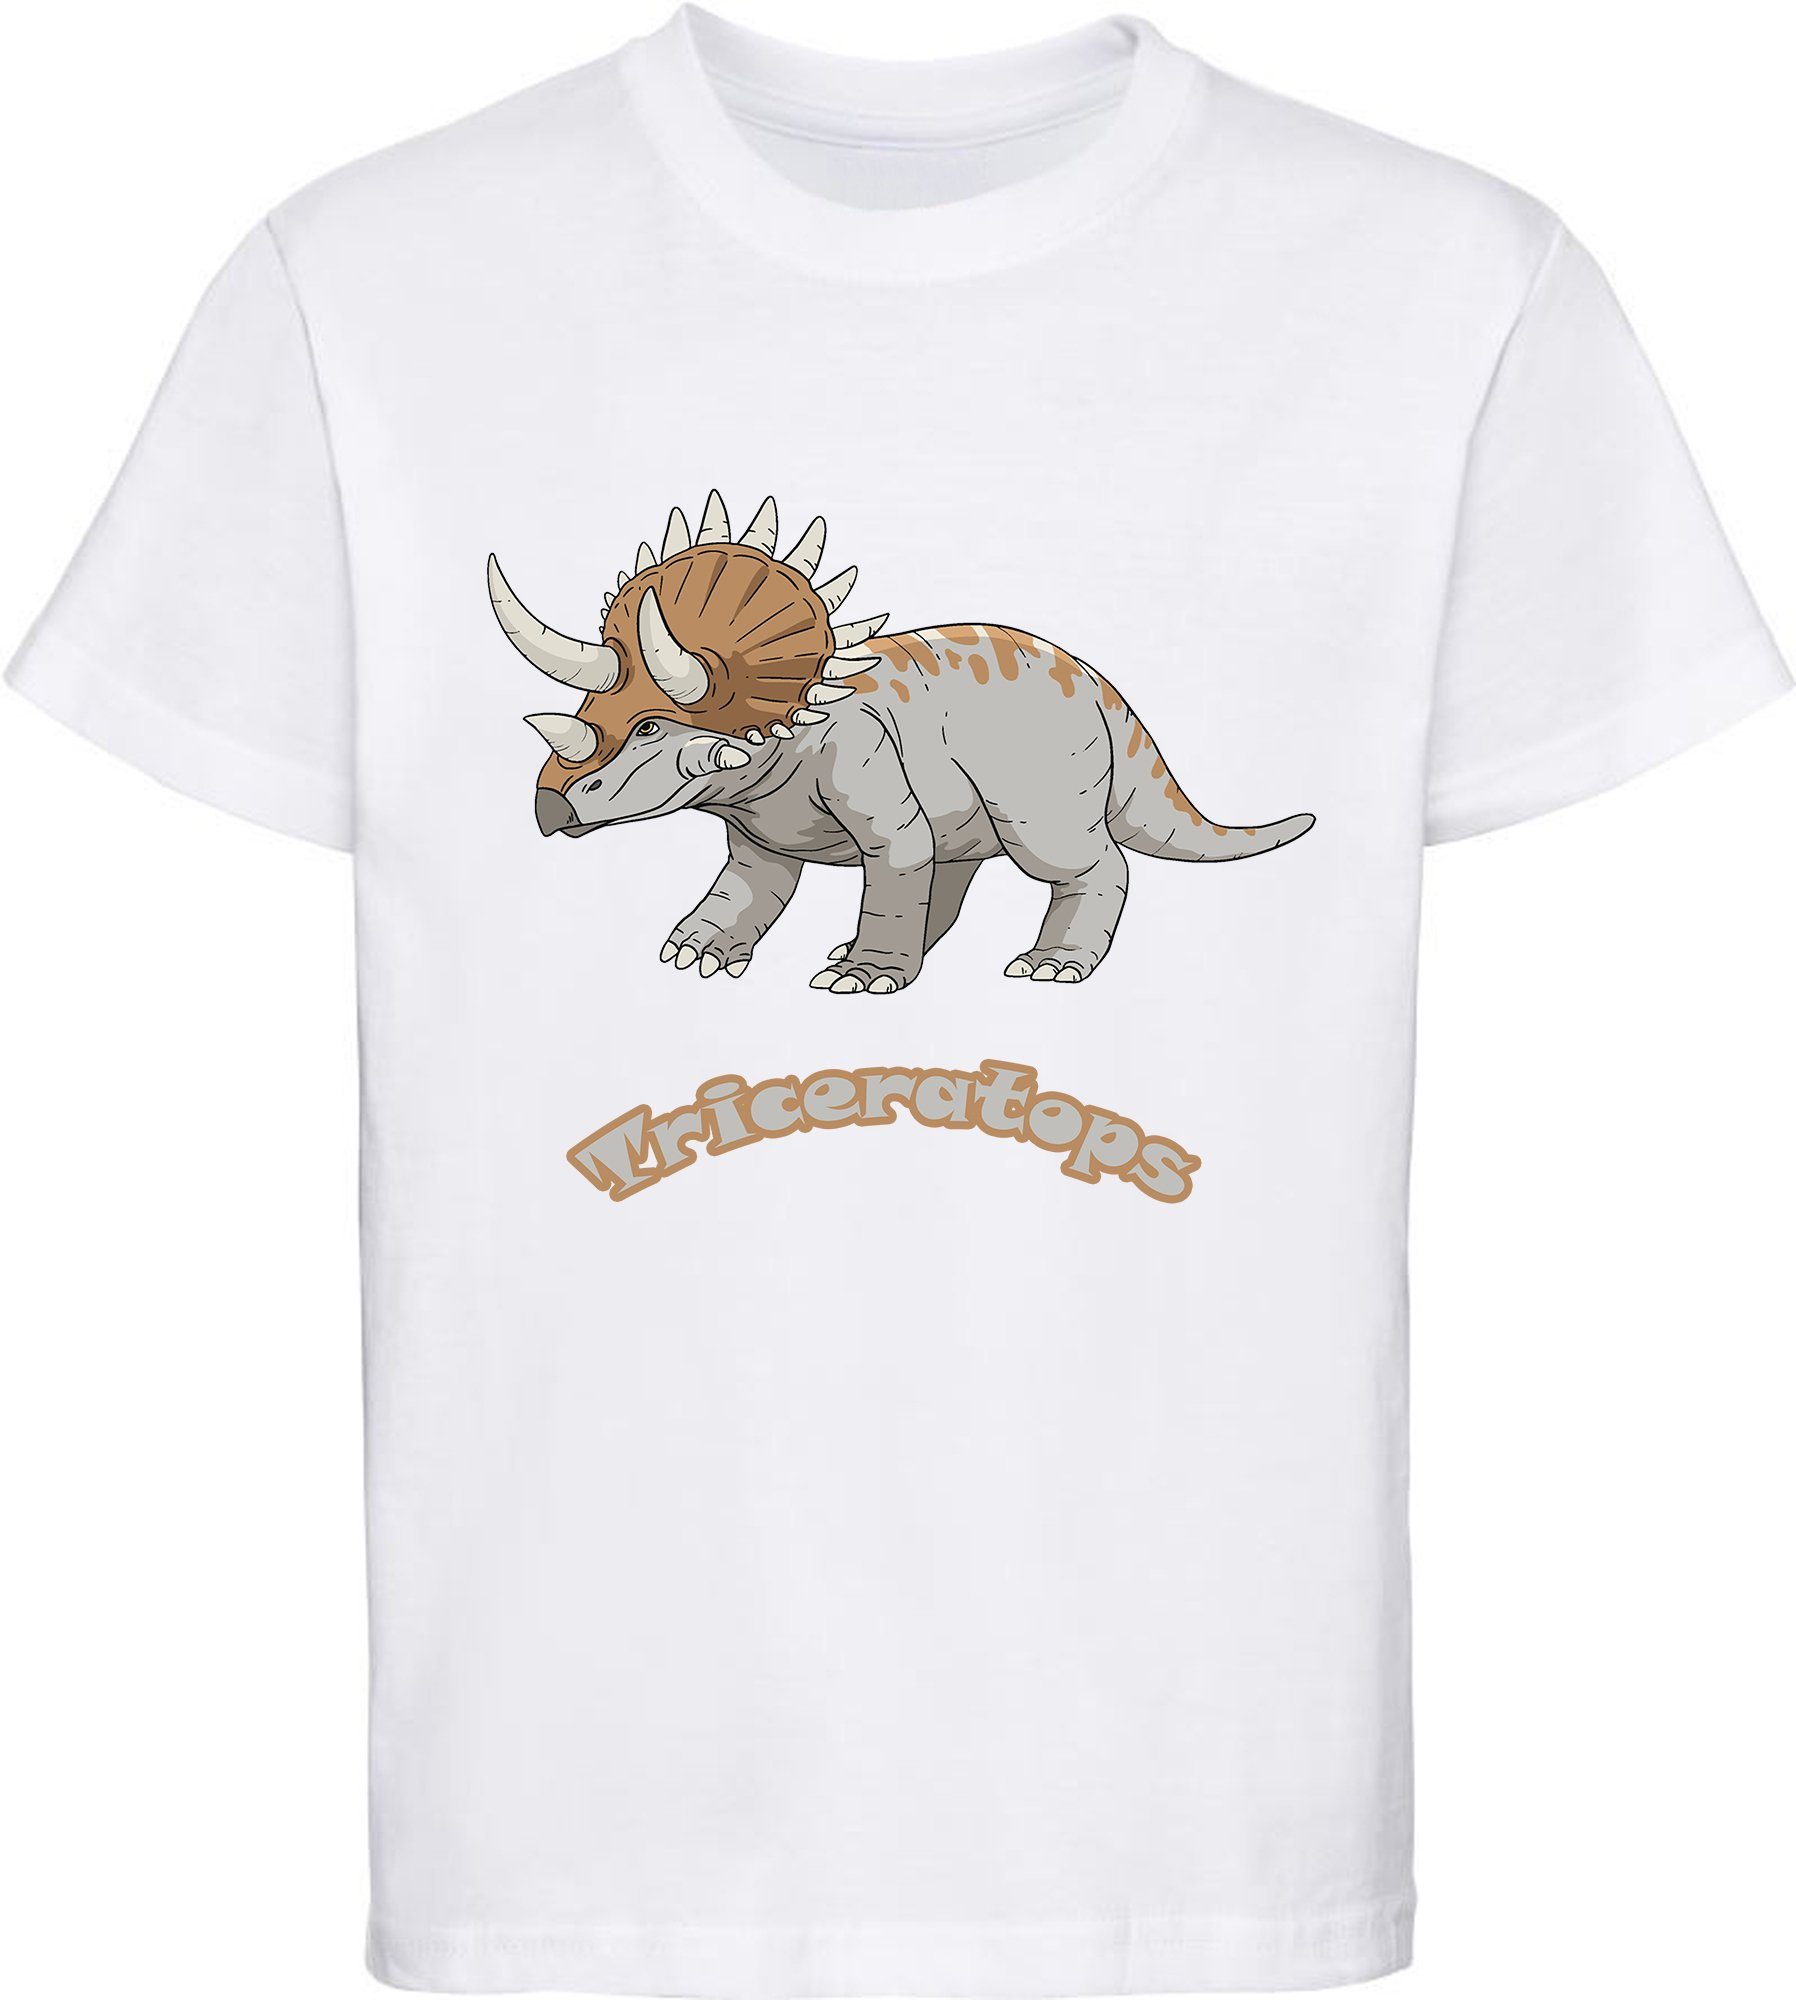 MyDesign24 T-Shirt T-Shirt Kinder mit mit i52 Aufdruck, Triceratops Dino 100% weiss Baumwolle bedrucktes